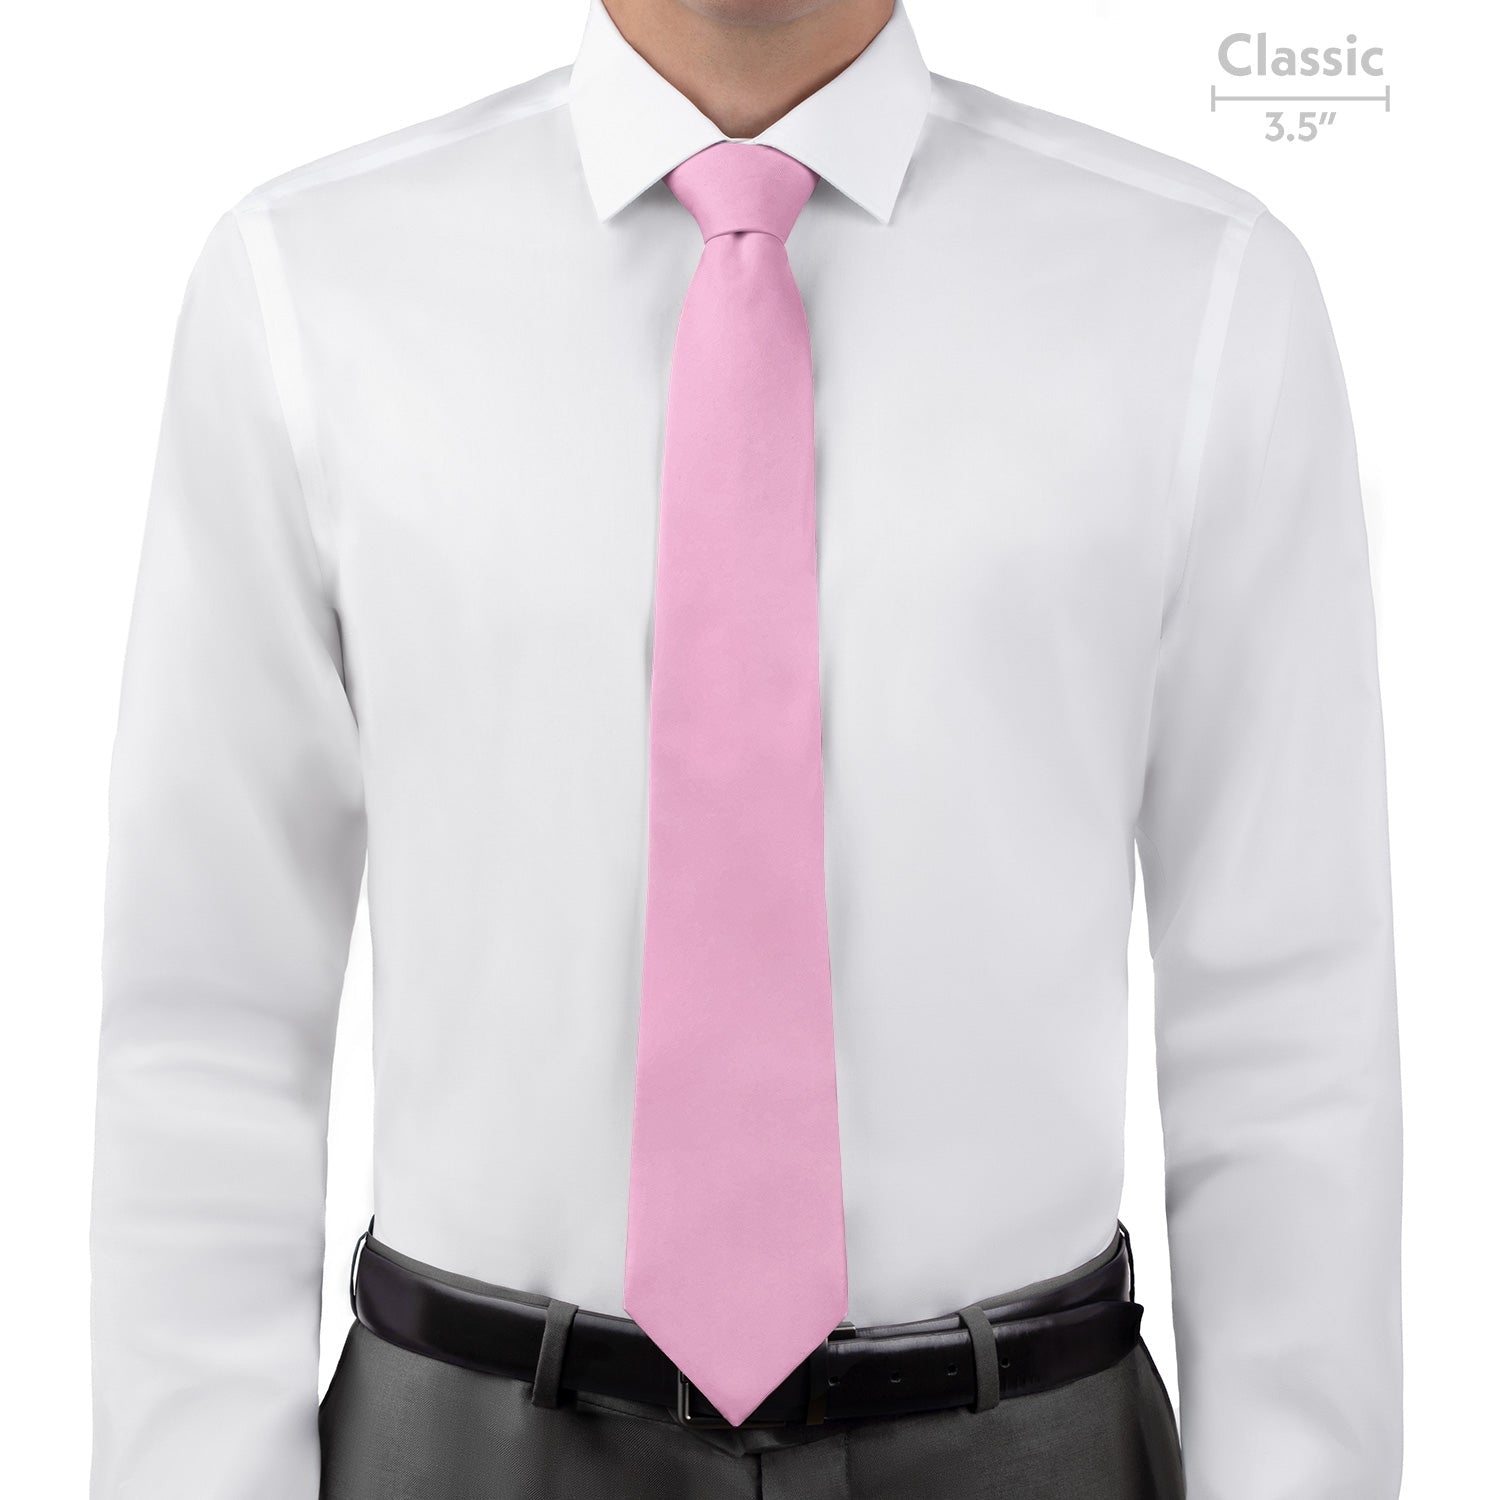 Azazie Candy Pink Necktie - Classic 3.5" -  - Knotty Tie Co.